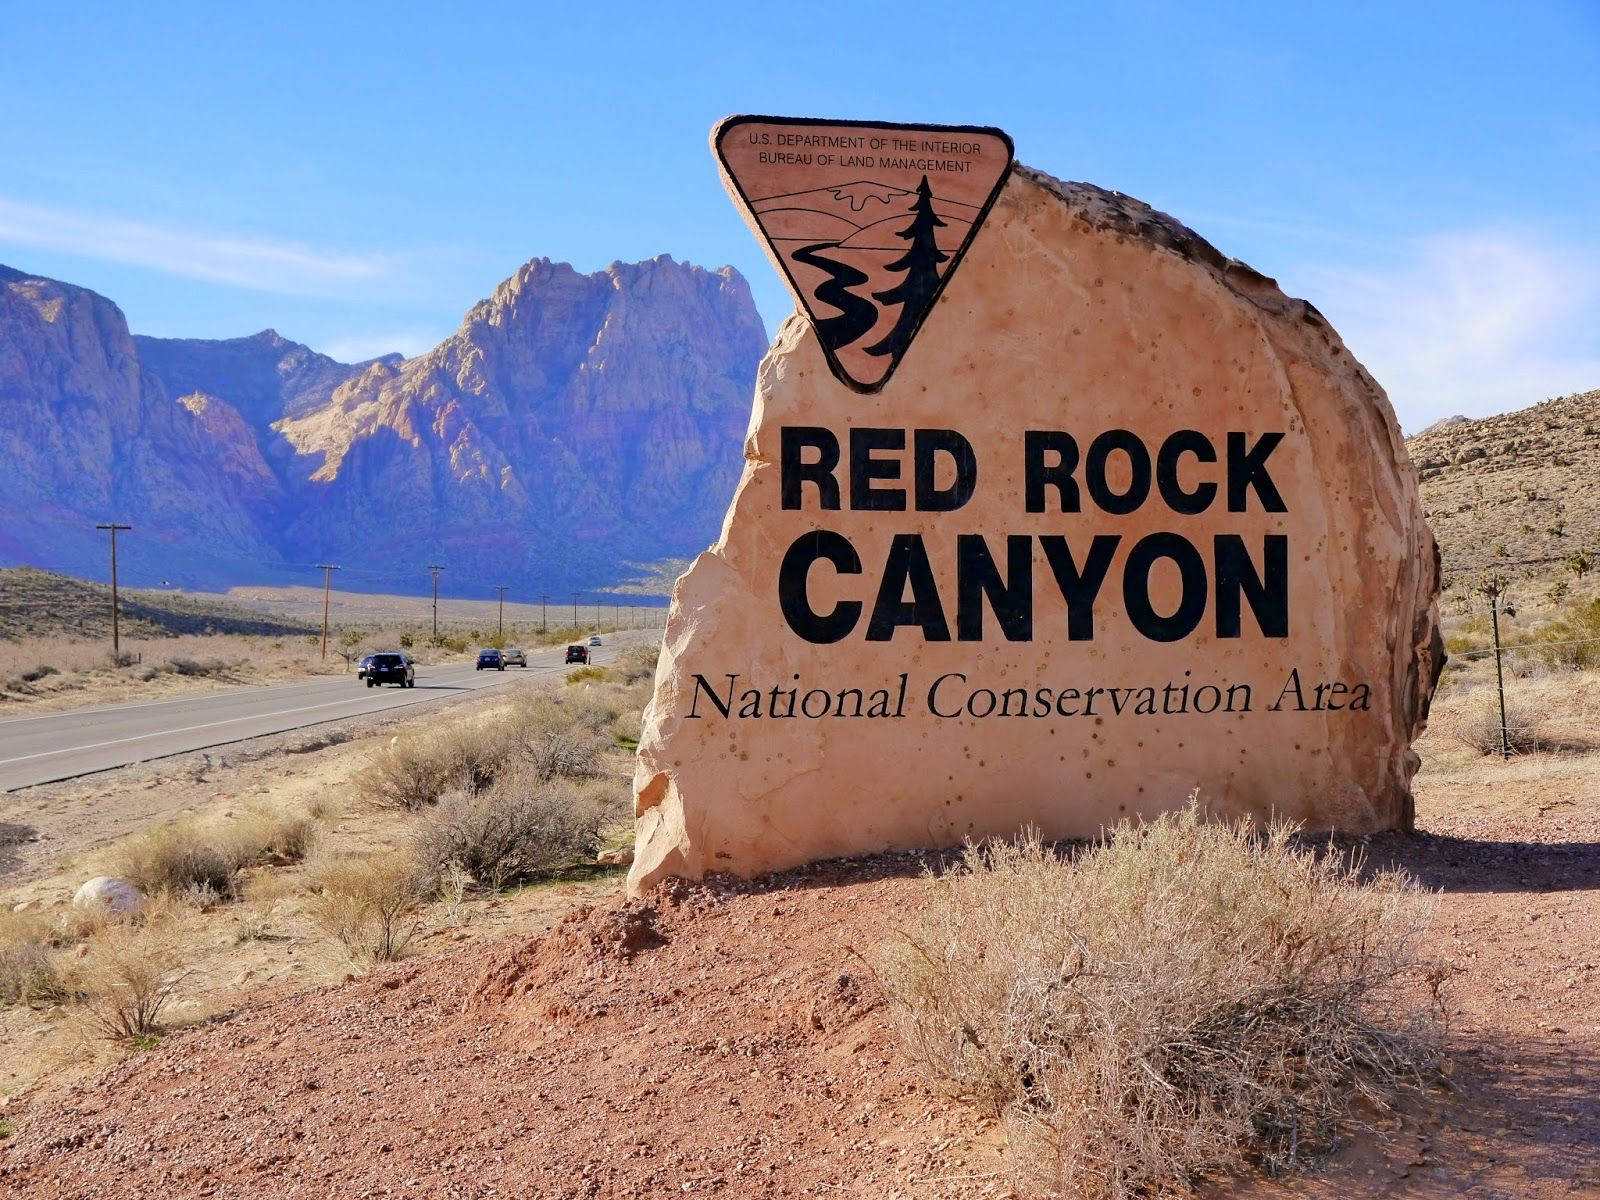 Areadi Conservazione Nazionale Di Red Rock Canyon. Sfondo